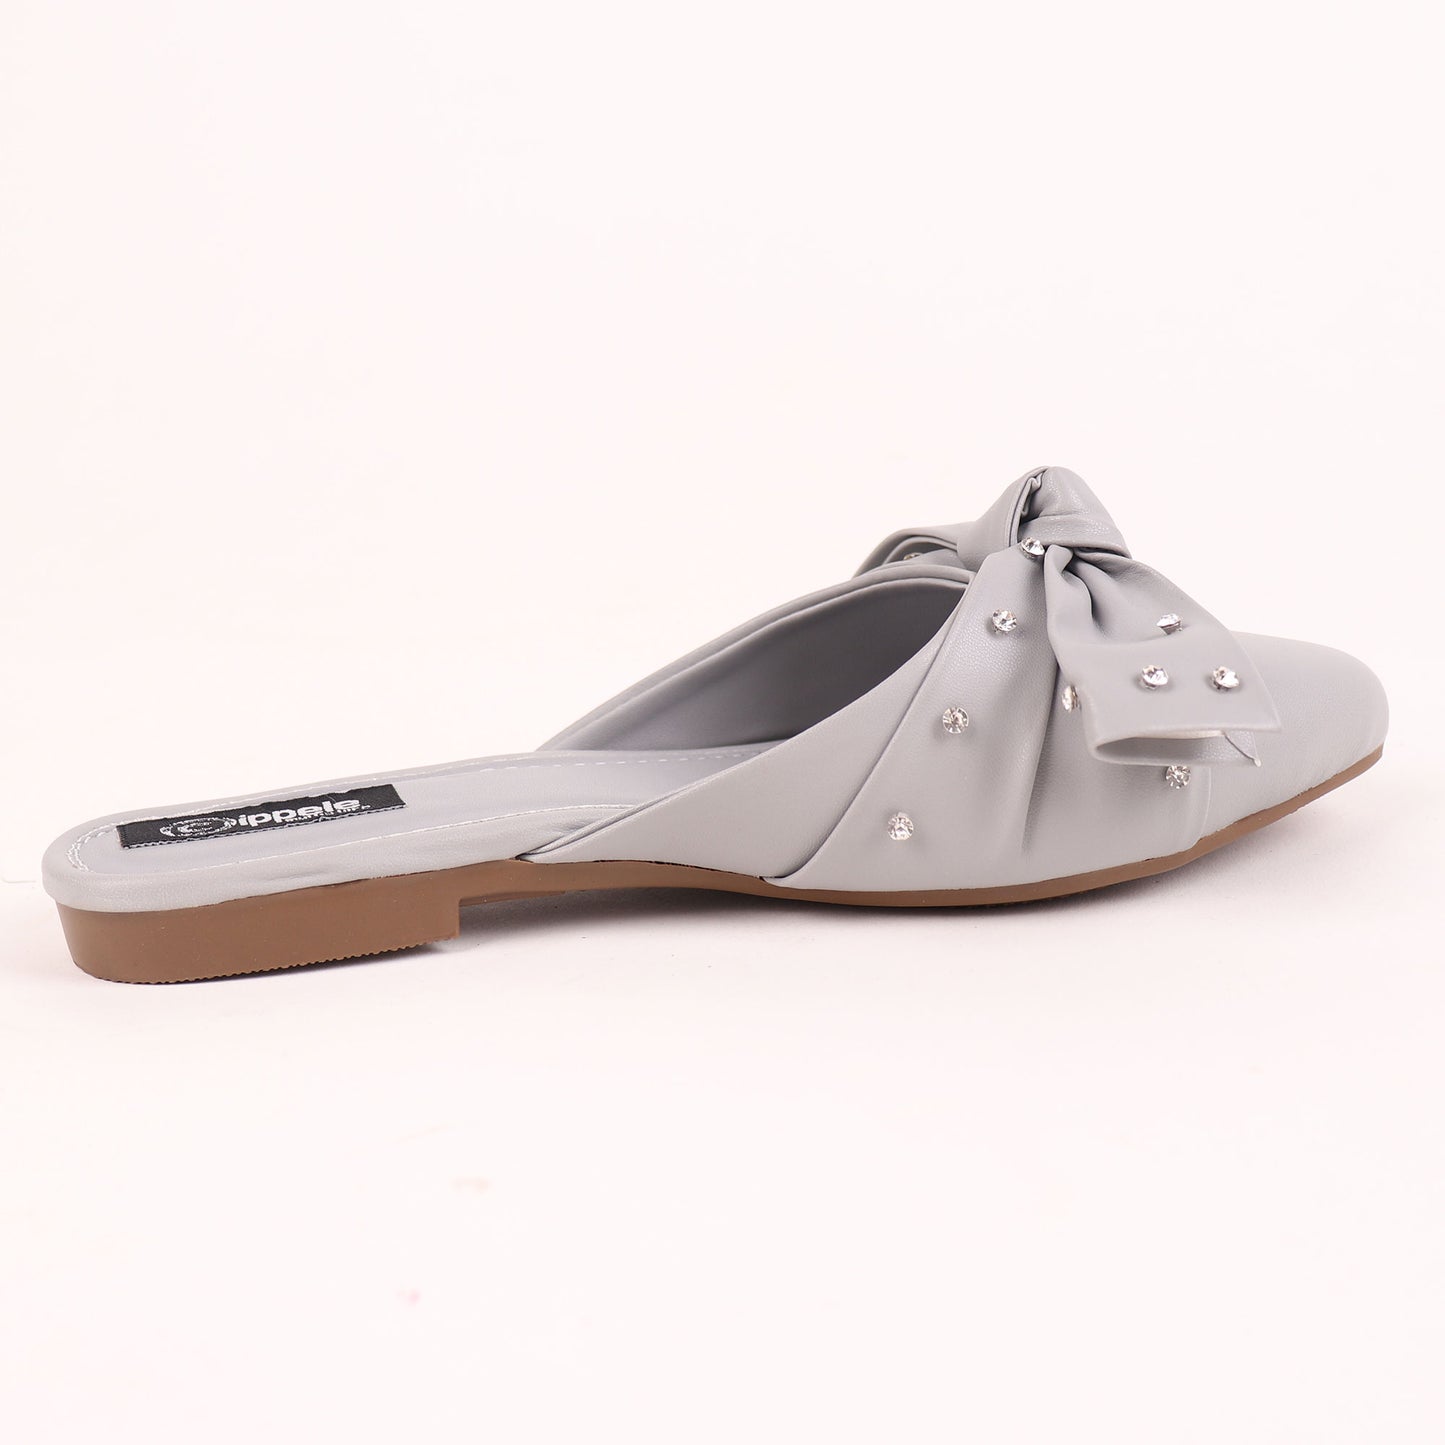 Foot Wear,The Kitten Bow Flats in Grey - Cippele Multi Store